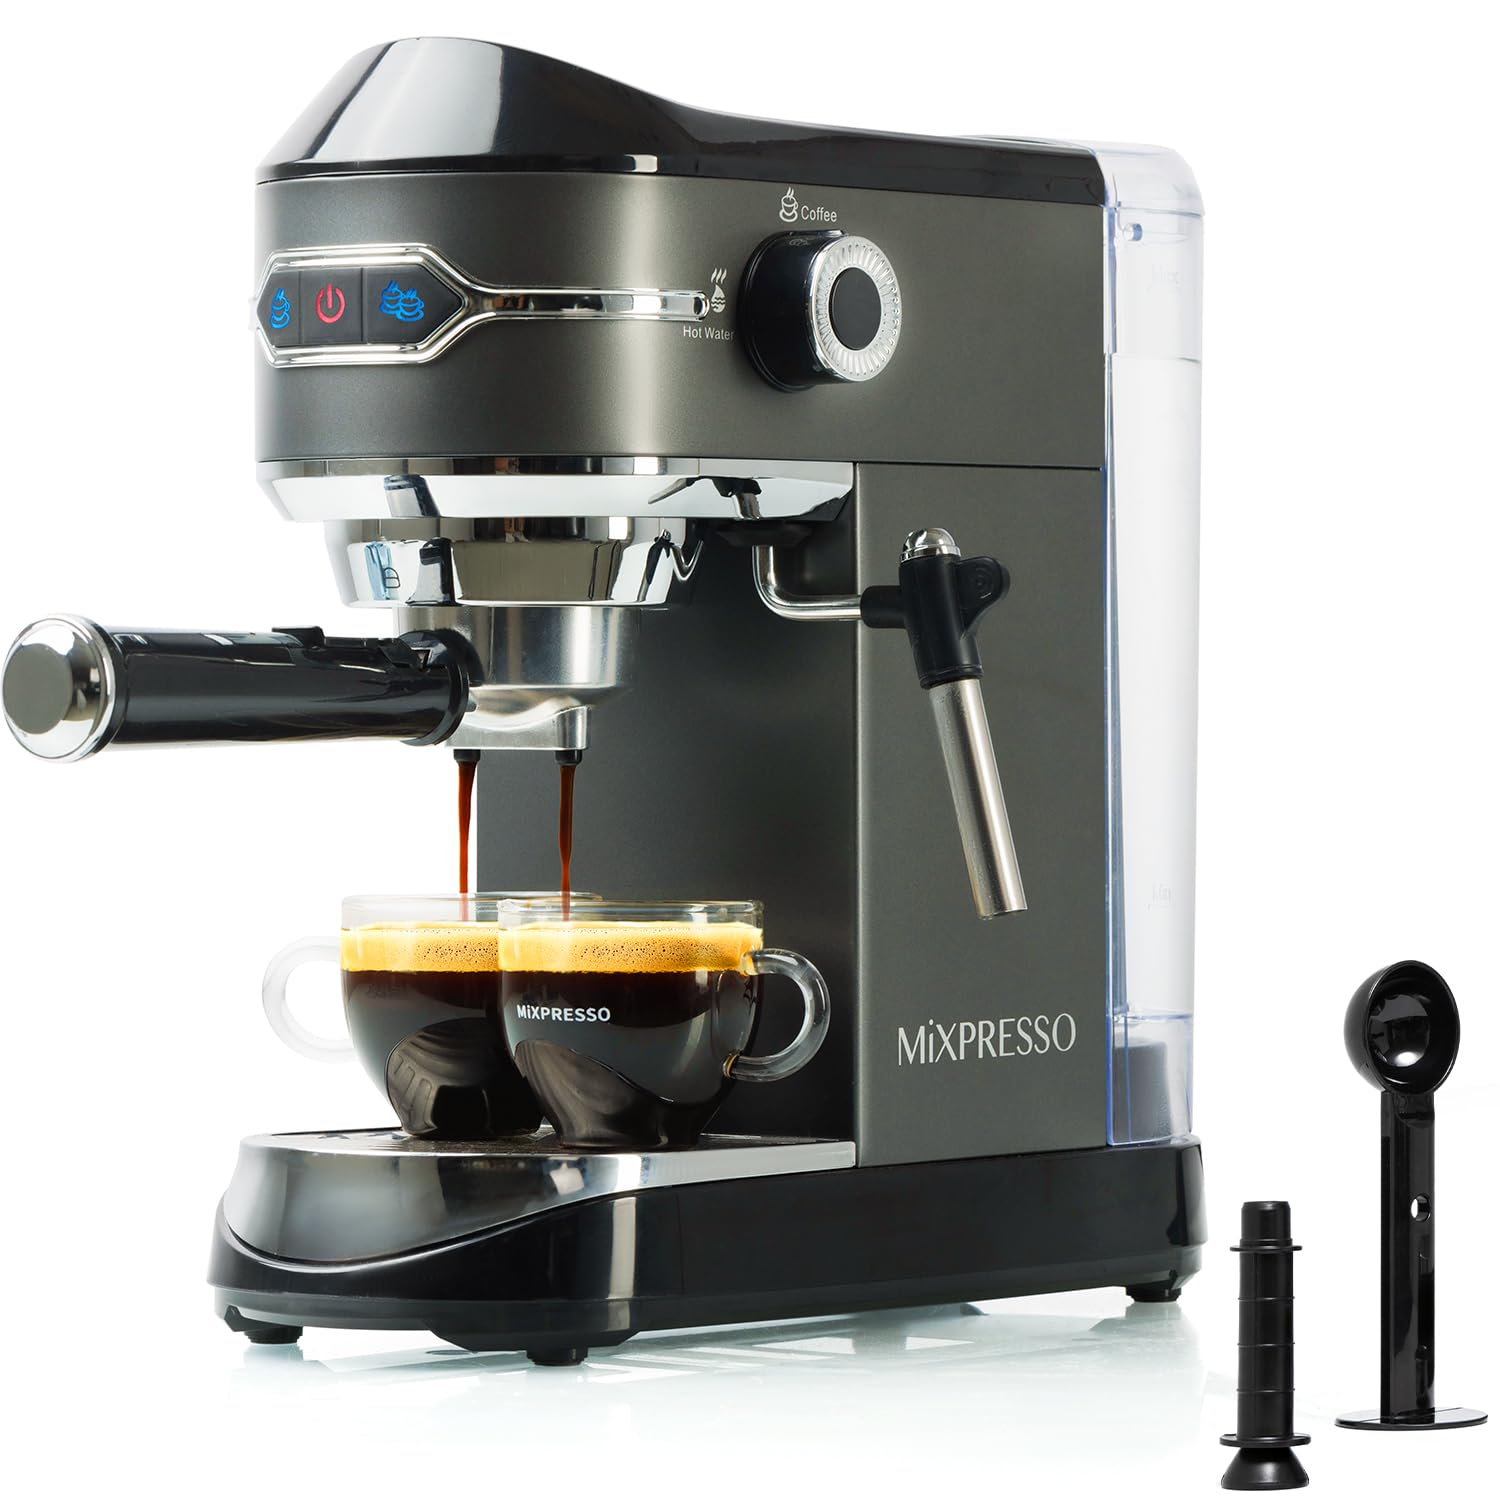 Mixpresso Professional Espresso Machine